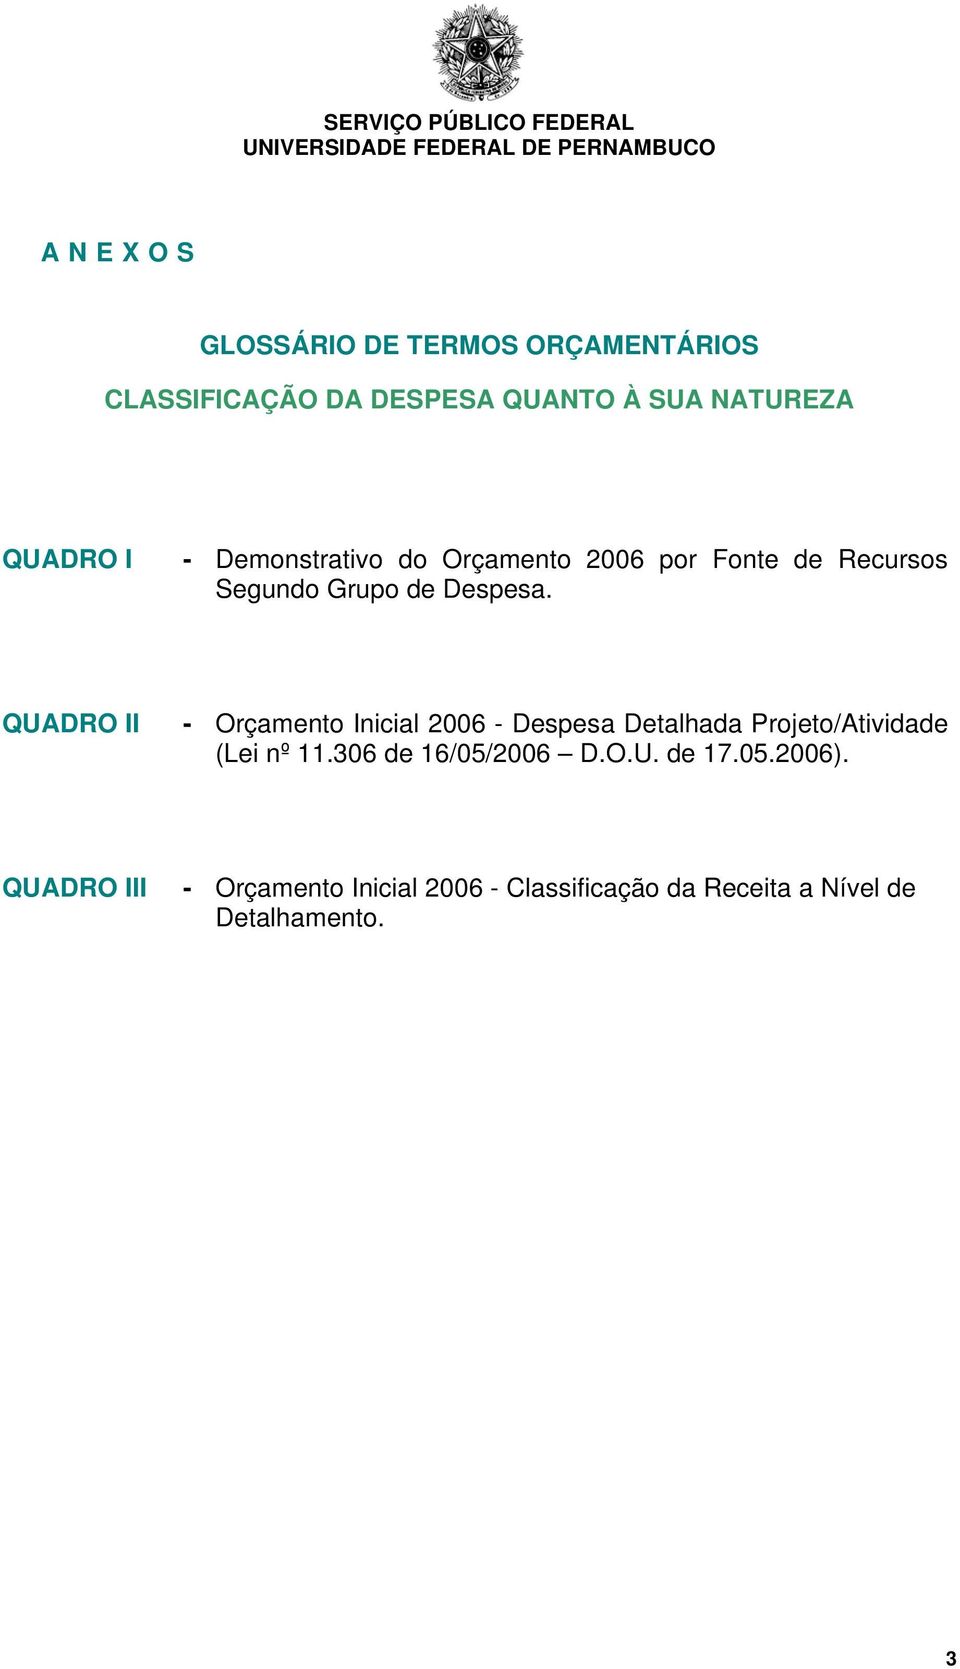 QUADRO II - Orçamento Inicial 2006 - Despesa Detalhada Projeto/Atividade (Lei nº 11.